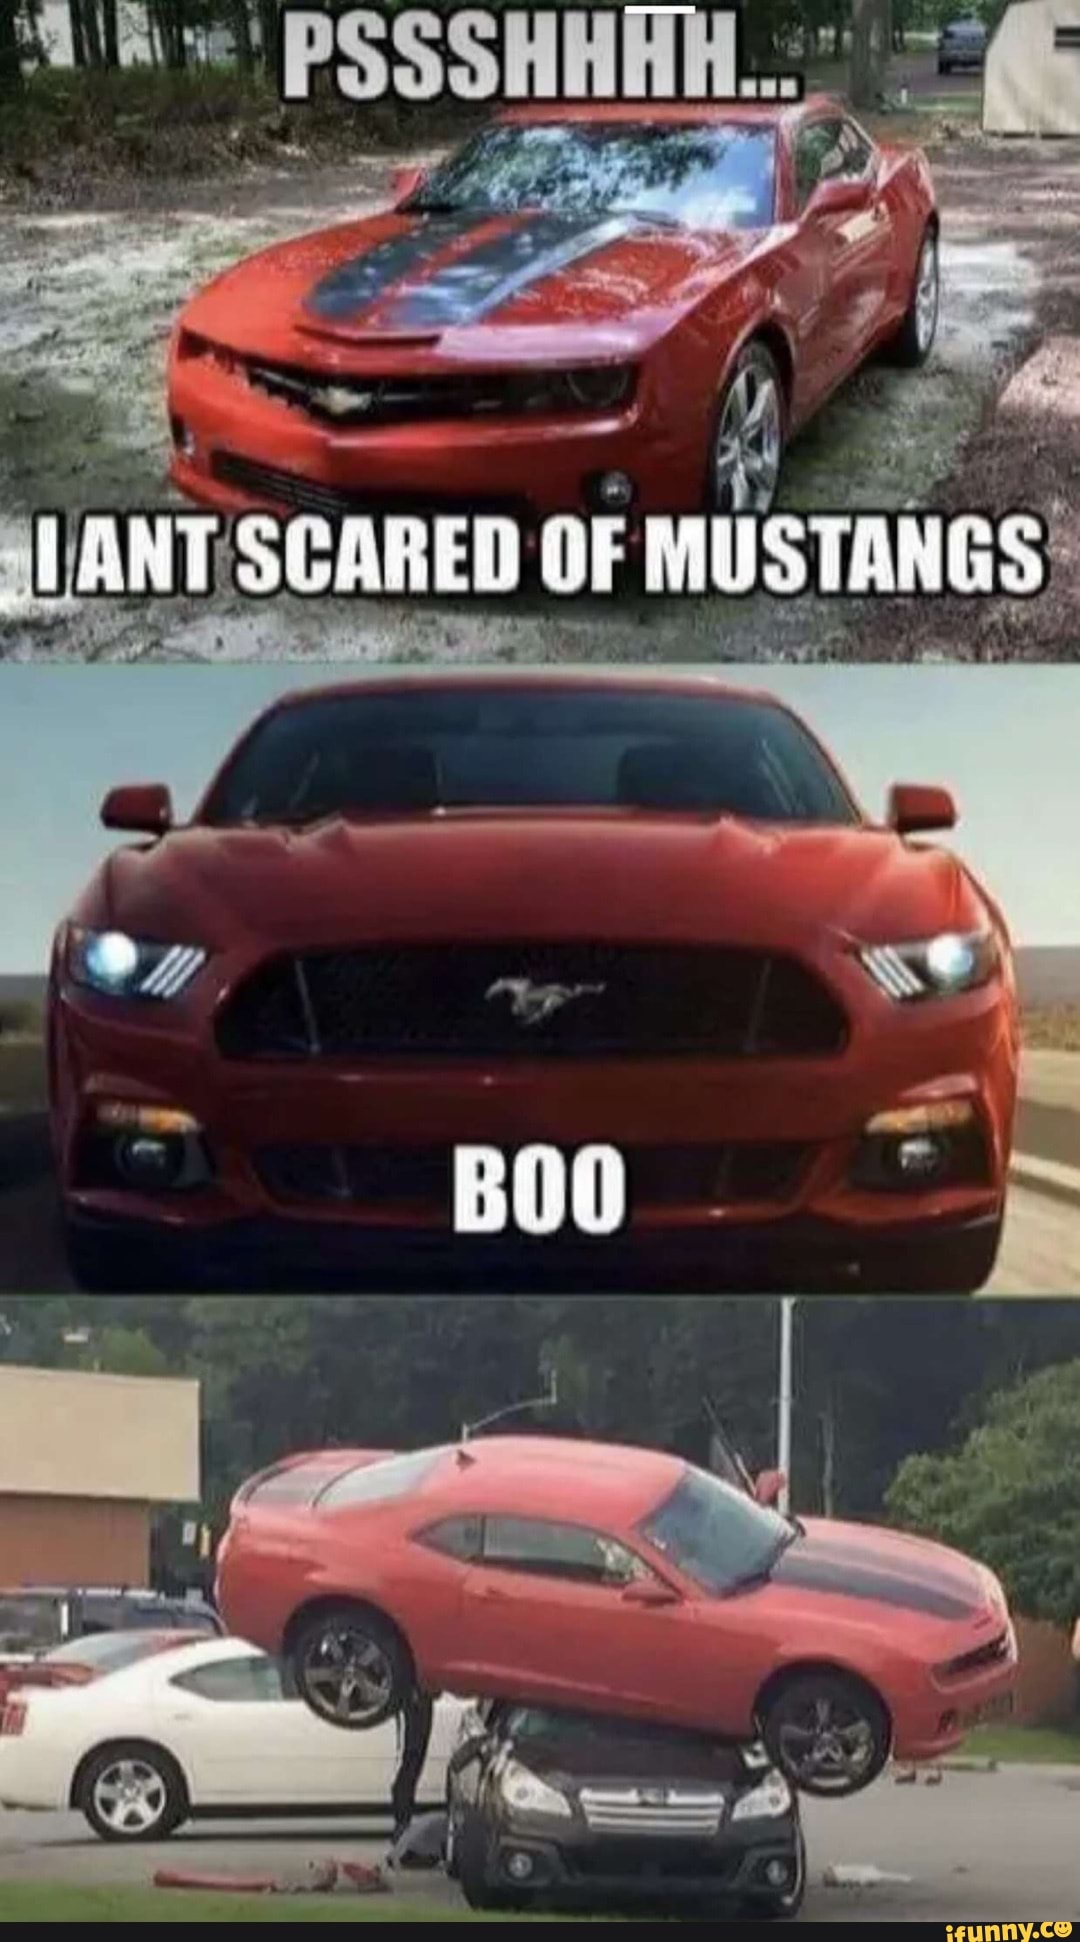 camaro vs mustang meme